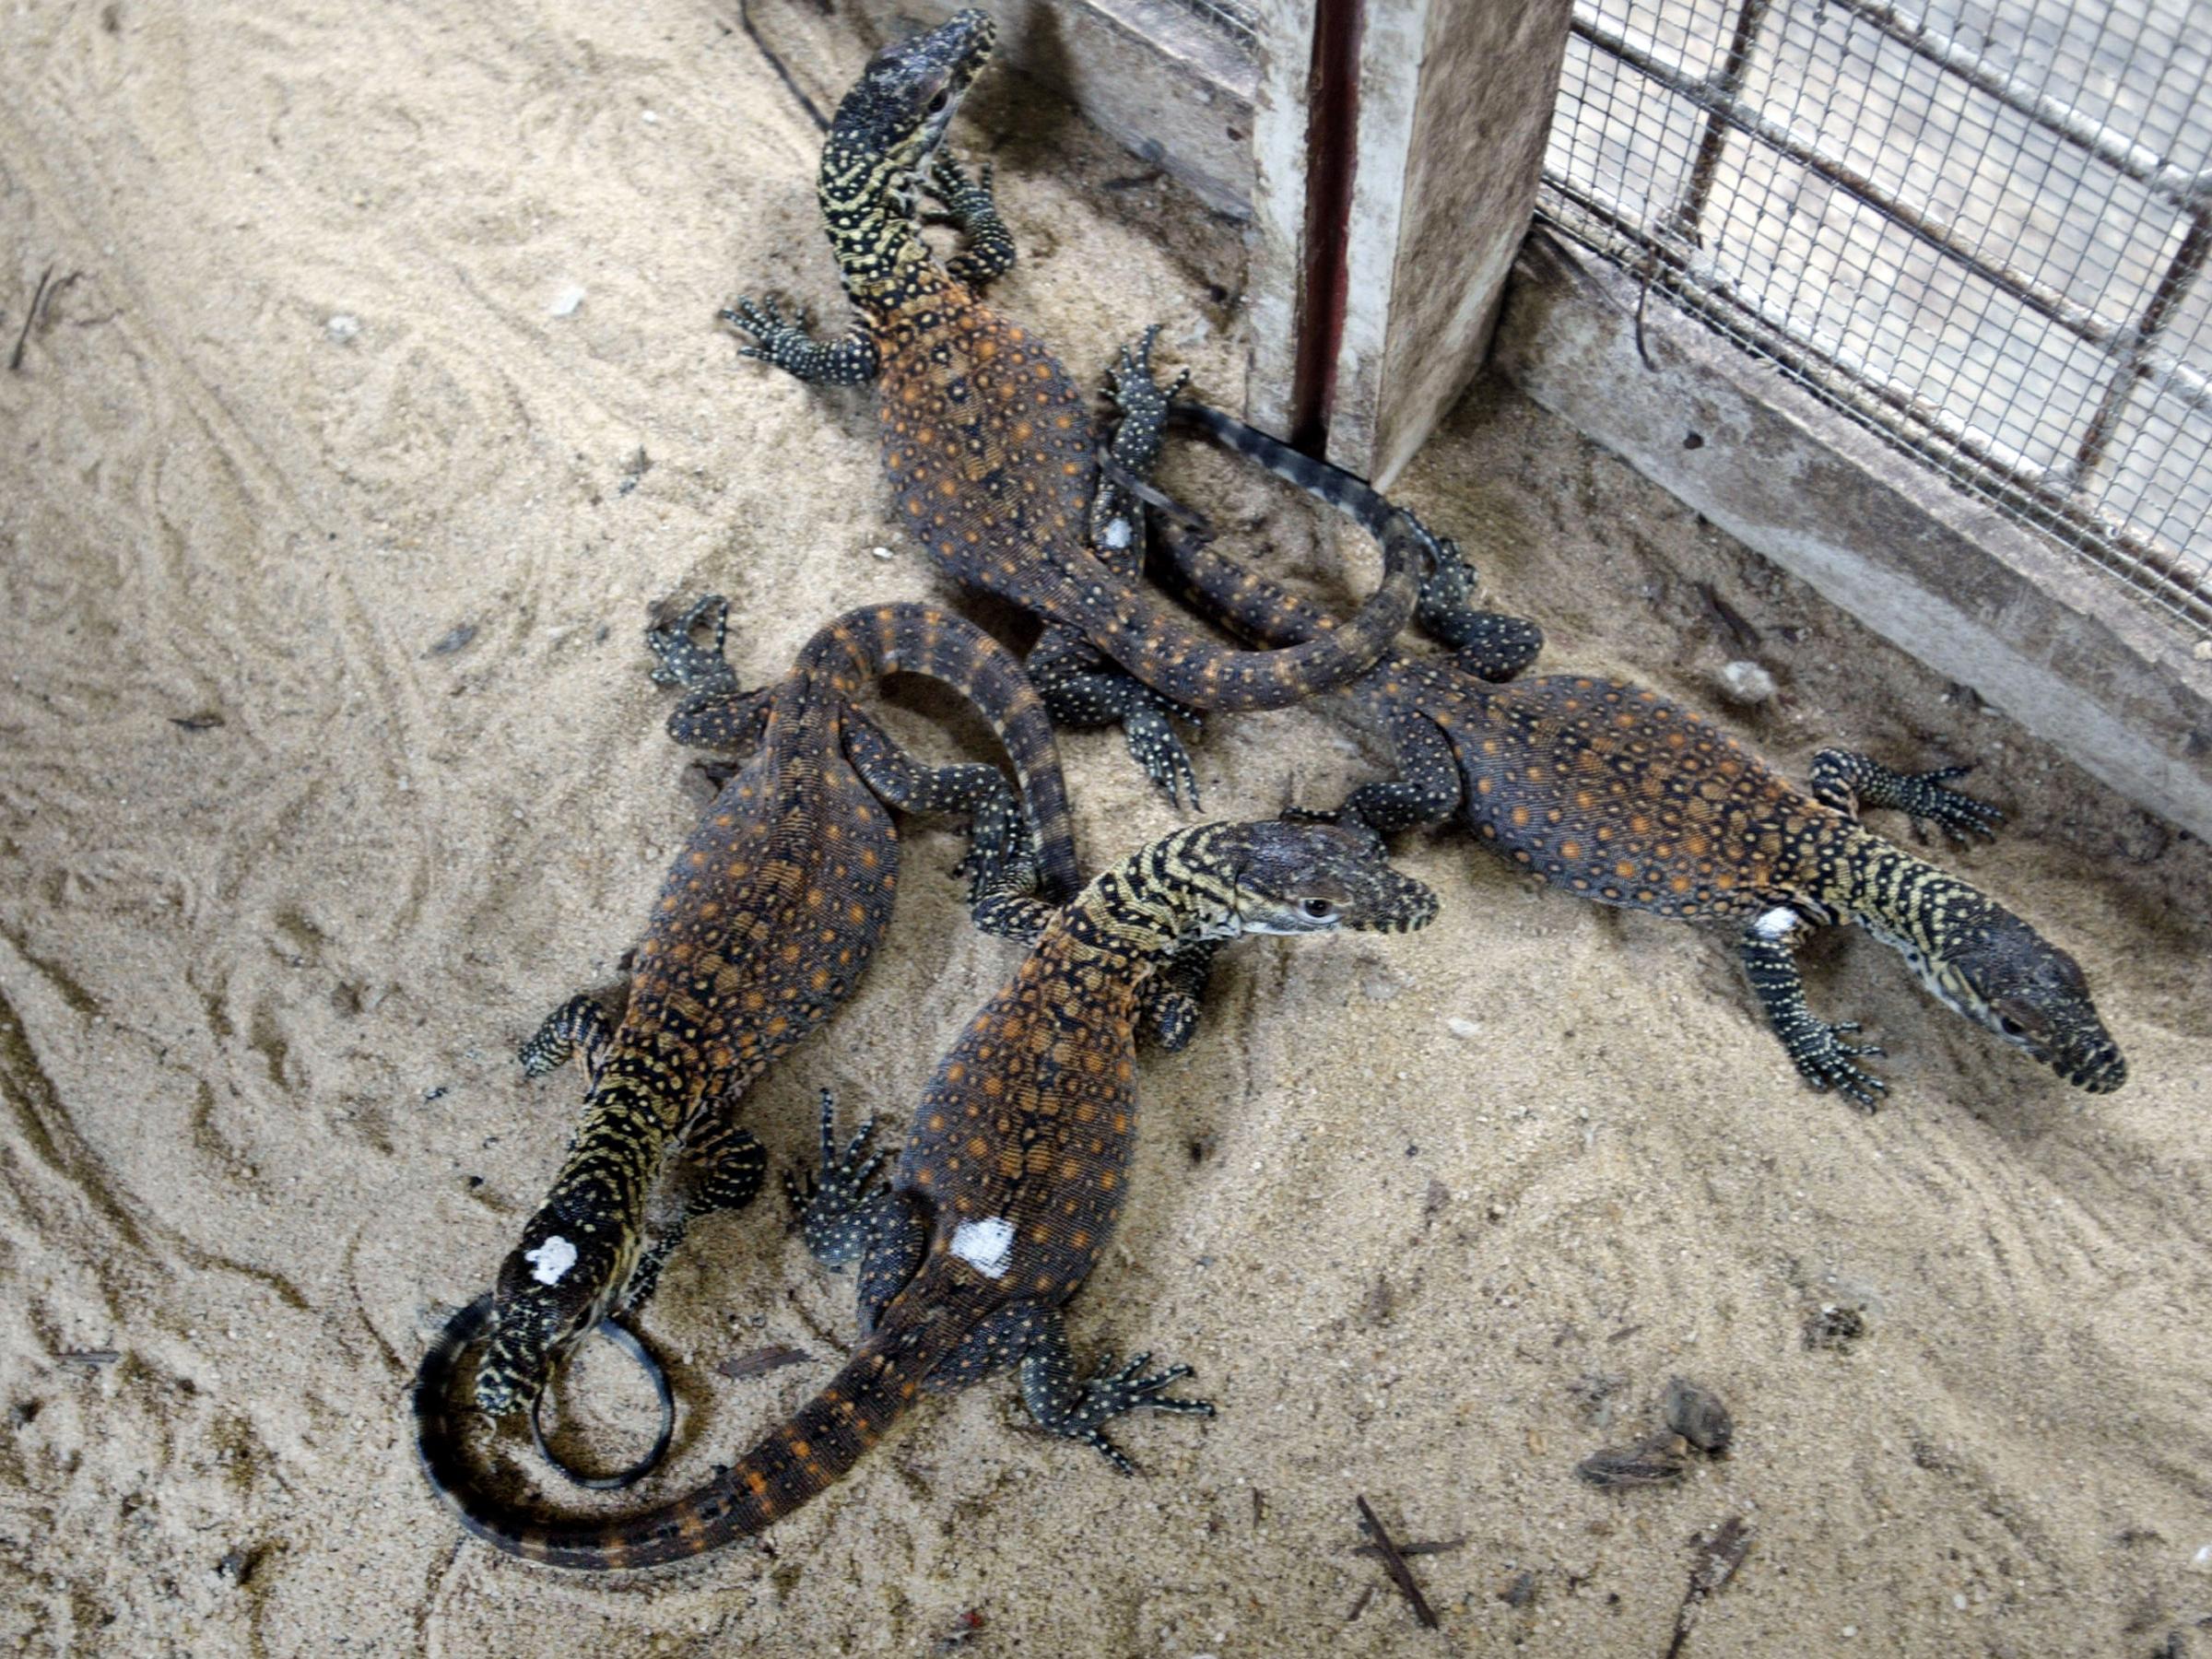 Indonesian Zoo Breeds Rare Komodo Dragons | WWNO